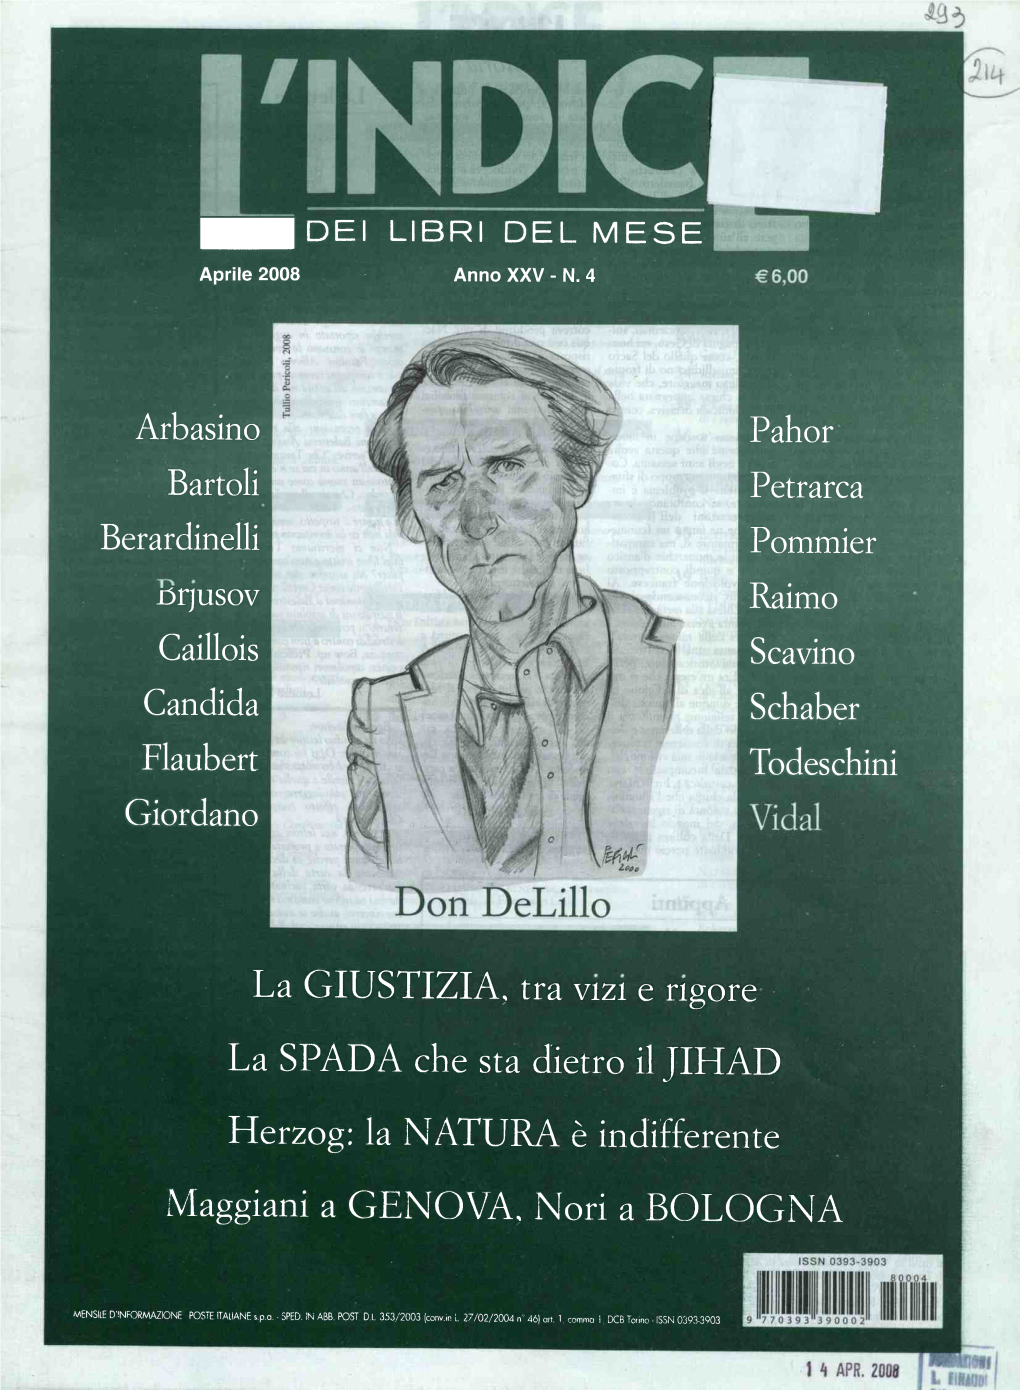 Arbasino Bartoli Berardinelli Pahor Petrarca Pommier Raimo Scavino